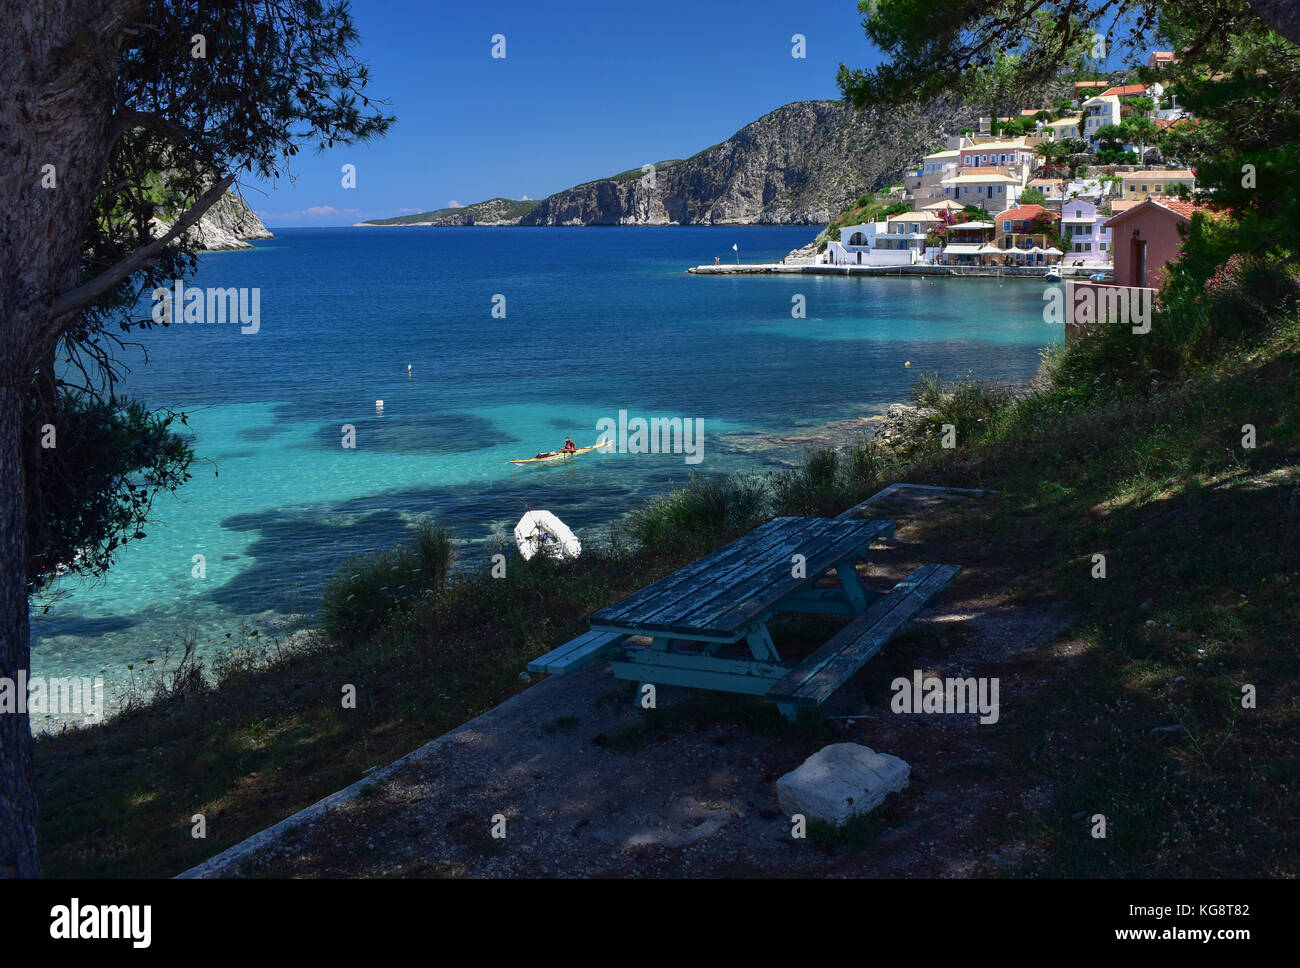 Un banc de pique-nique à l'ombre avec vue sur la baie à asos, Céphalonie, Grèce. Banque D'Images